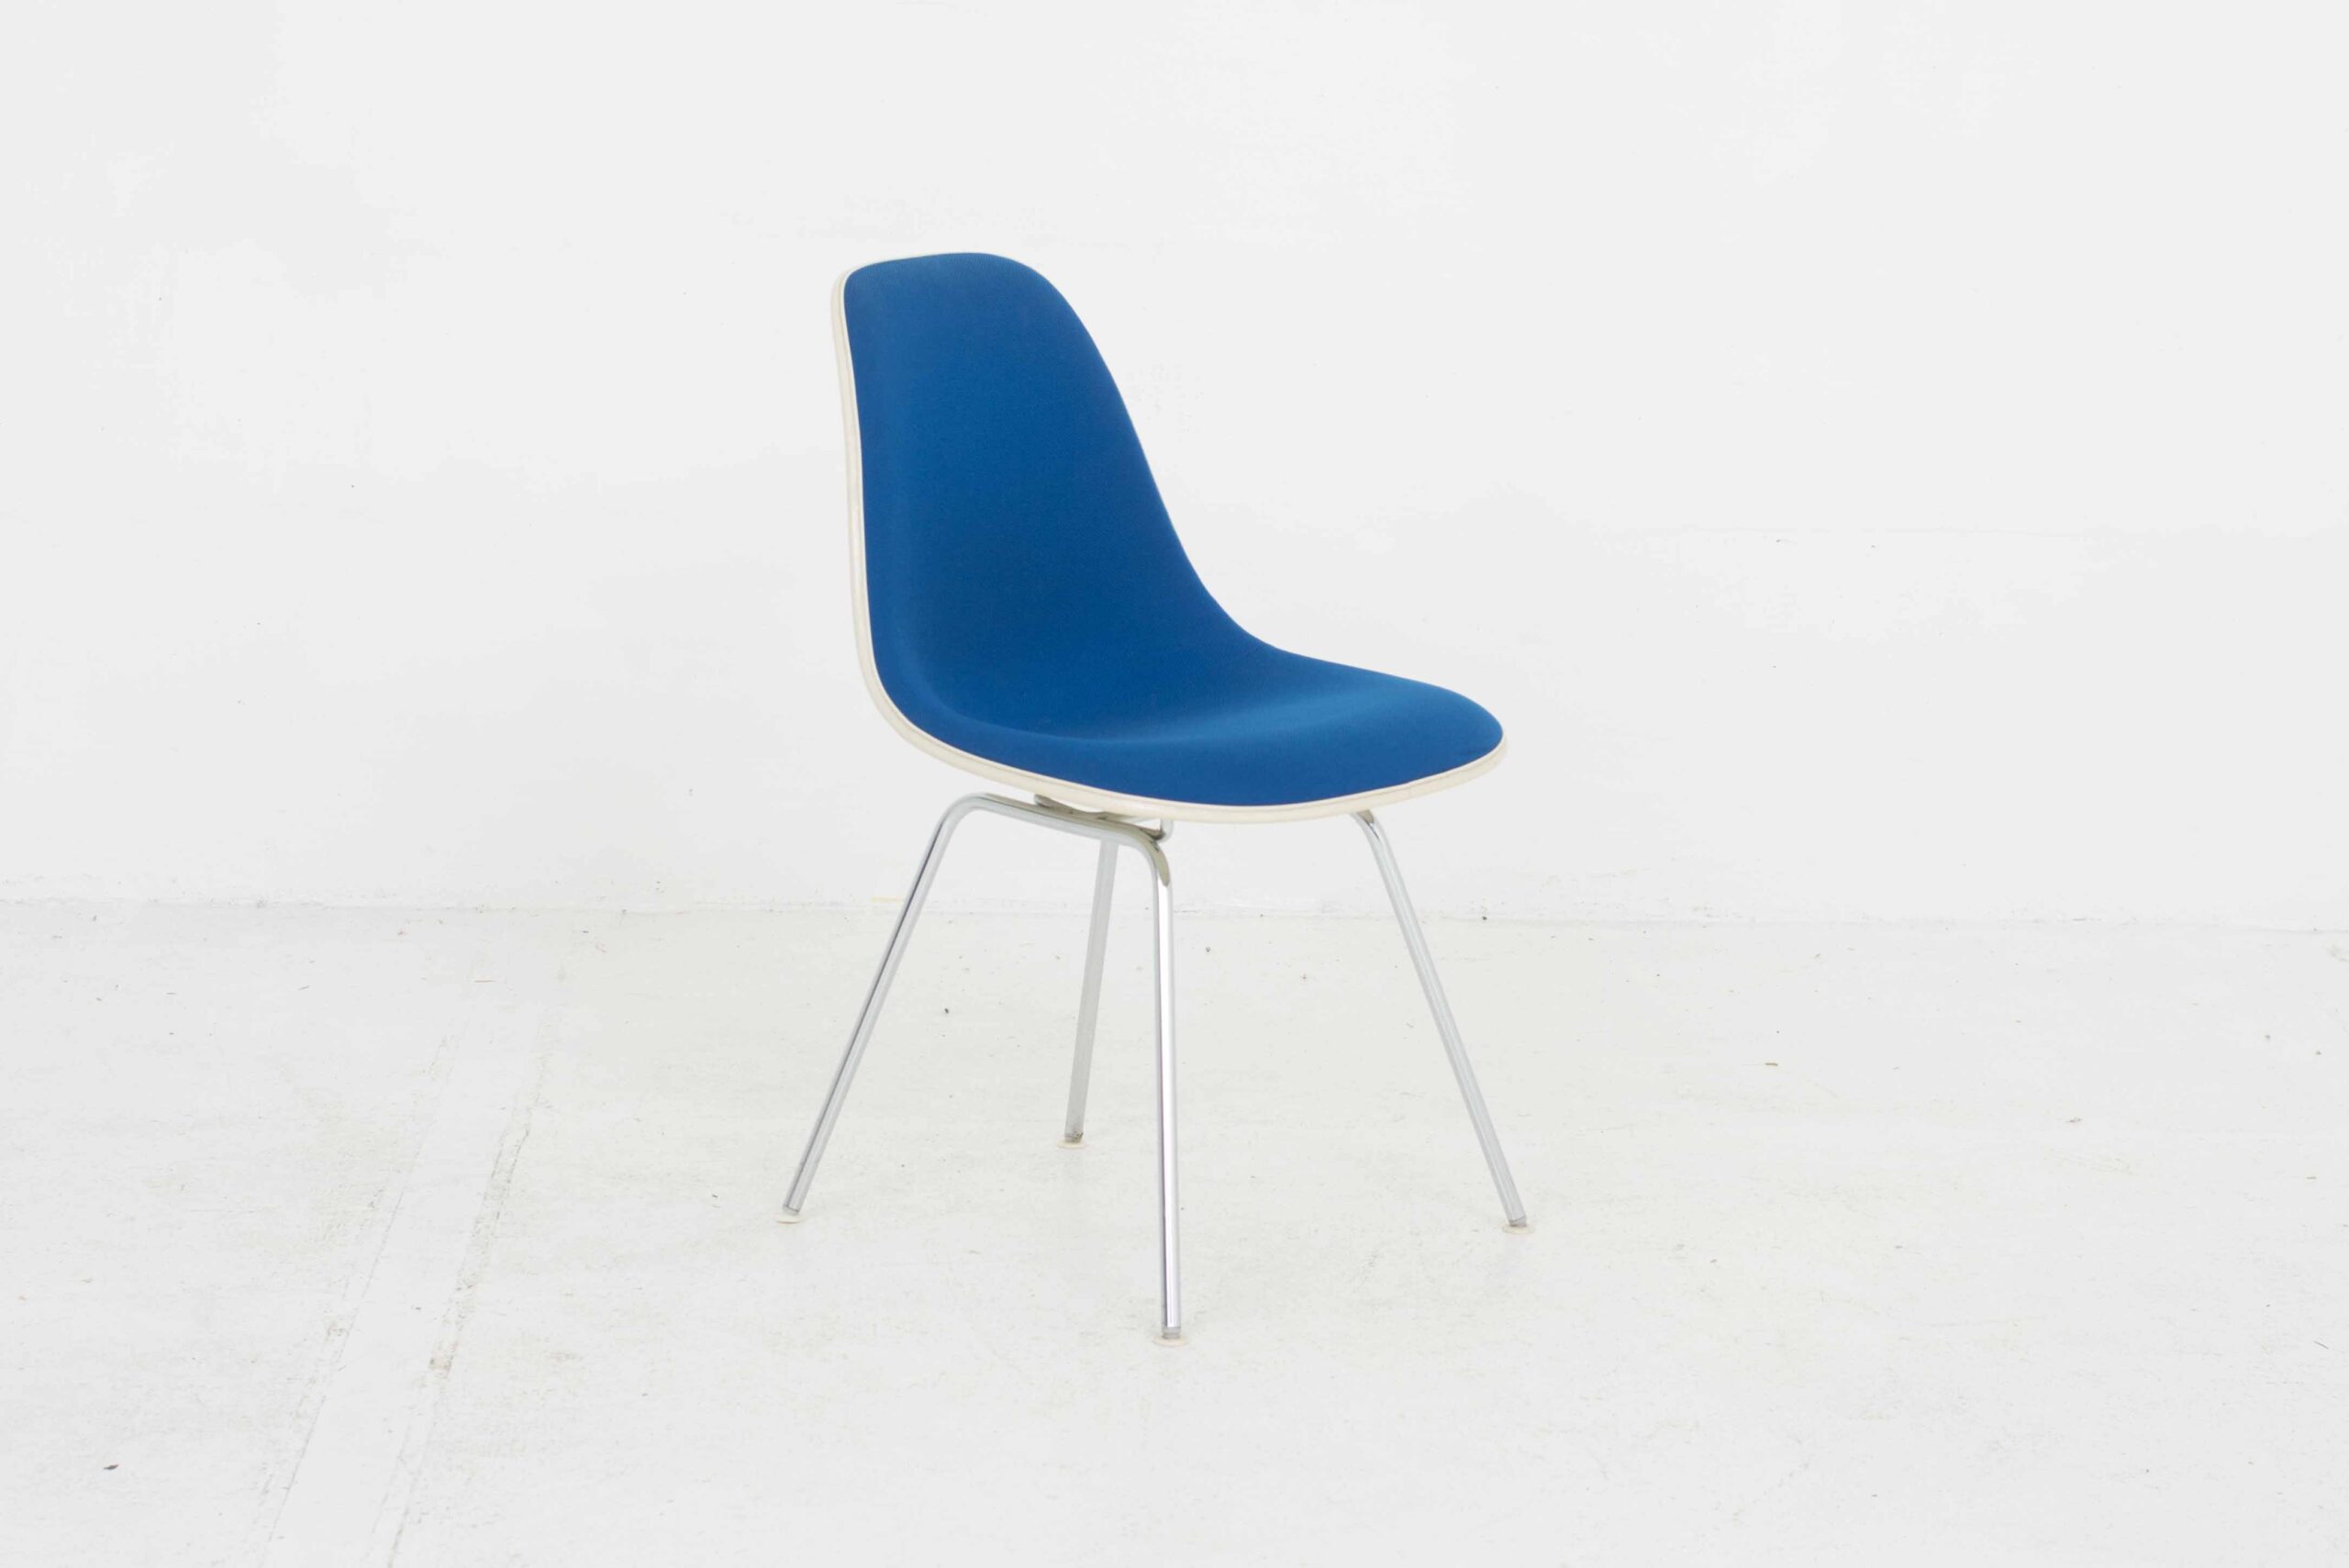 Eames Fiberglas Side Chairs von Vitra / Hermann Miller, im Viererset-4